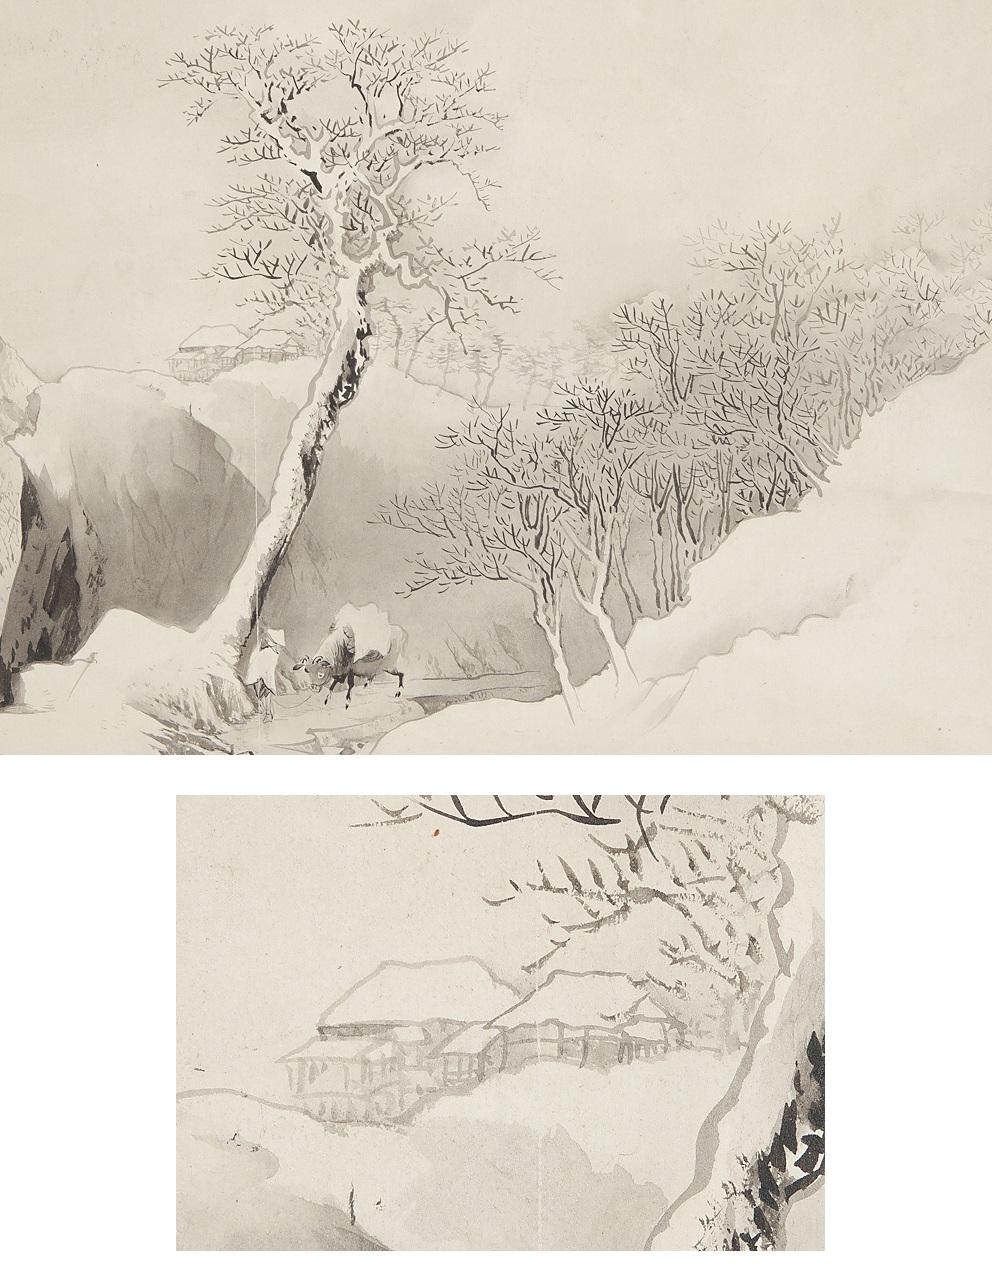 Tamazusa Kawabata
1842-1913
Peintre japonais. Étudiant de Kyoto. Il s'appelle Takinosuke, Keitei dans un autre numéro, et Kei dans ses dernières années. À l'âge de onze ans, il entre chez Aki Nakajima, puis apprend auprès de Kaikei Oda. Après